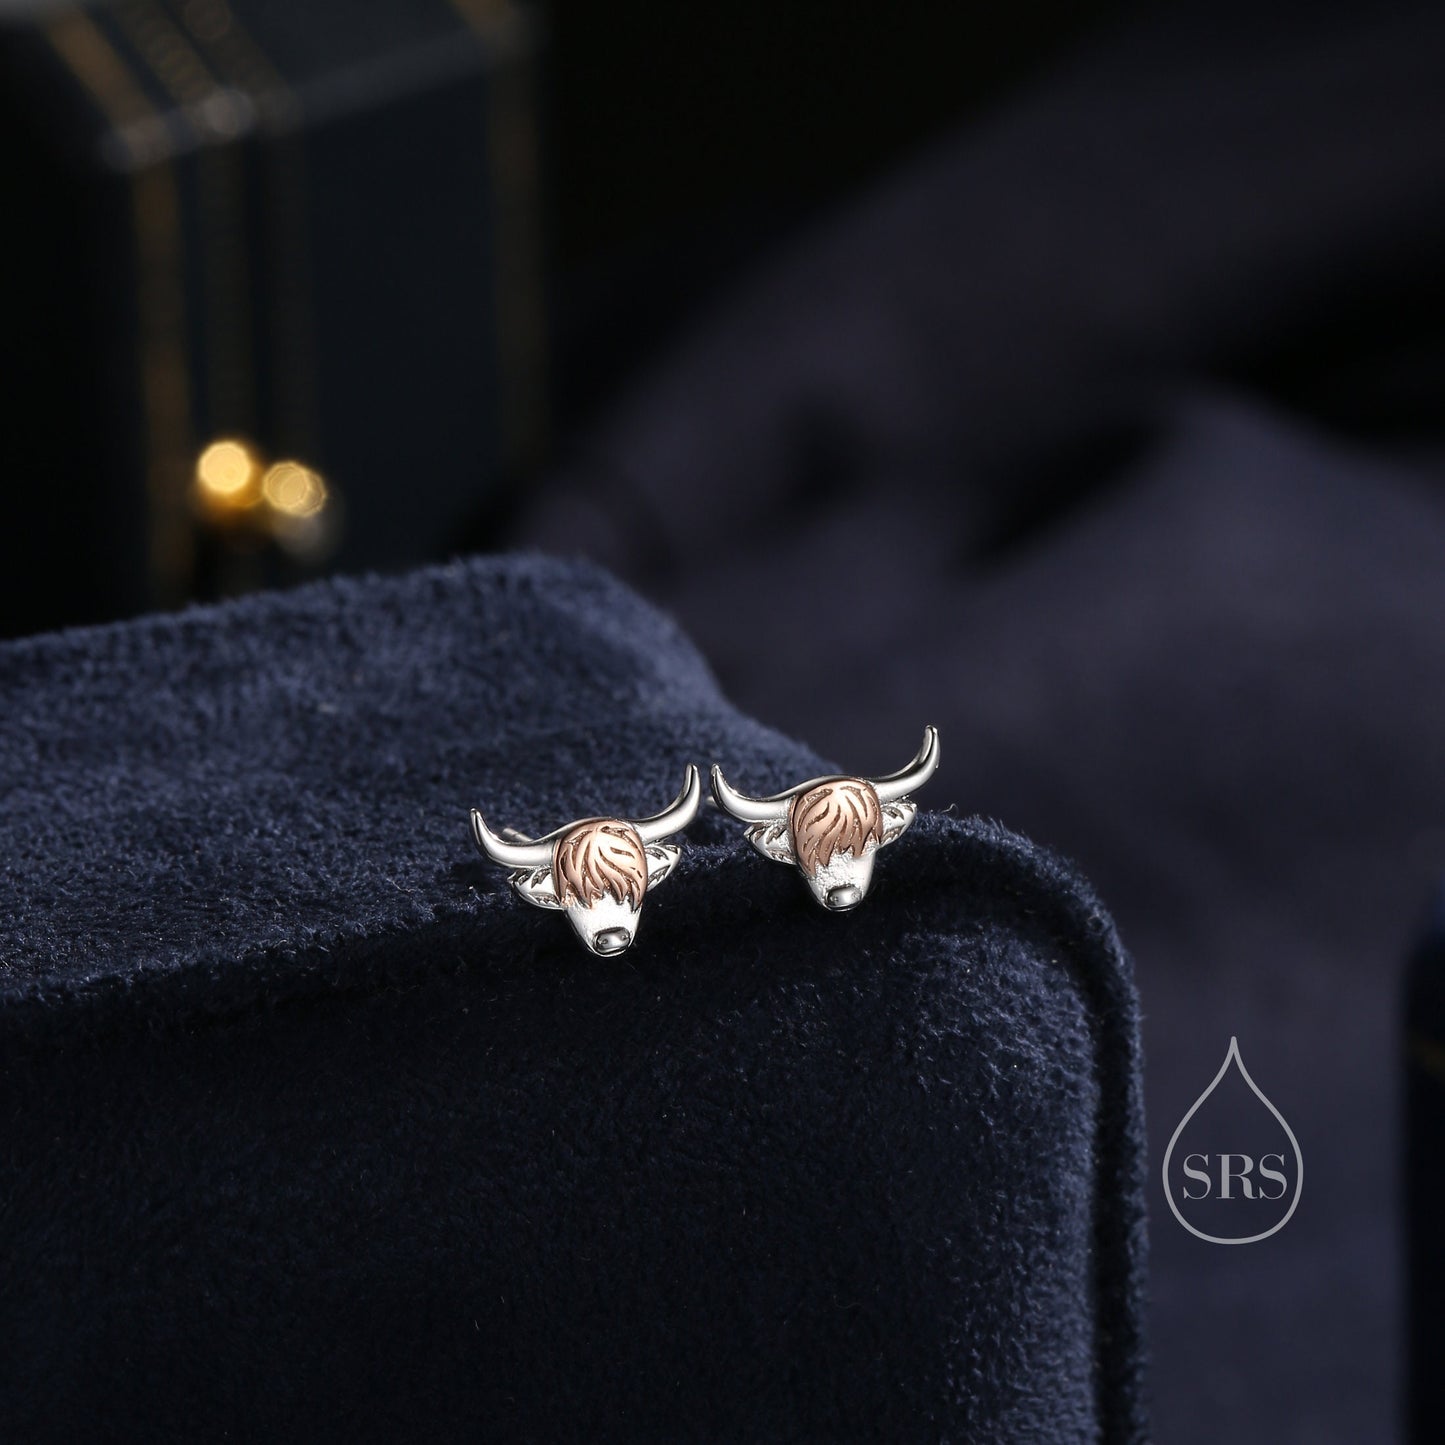 Two Tone Highland Cow Stud Earrings in Sterling Silver,  Bull Earrings, Cow Earrings